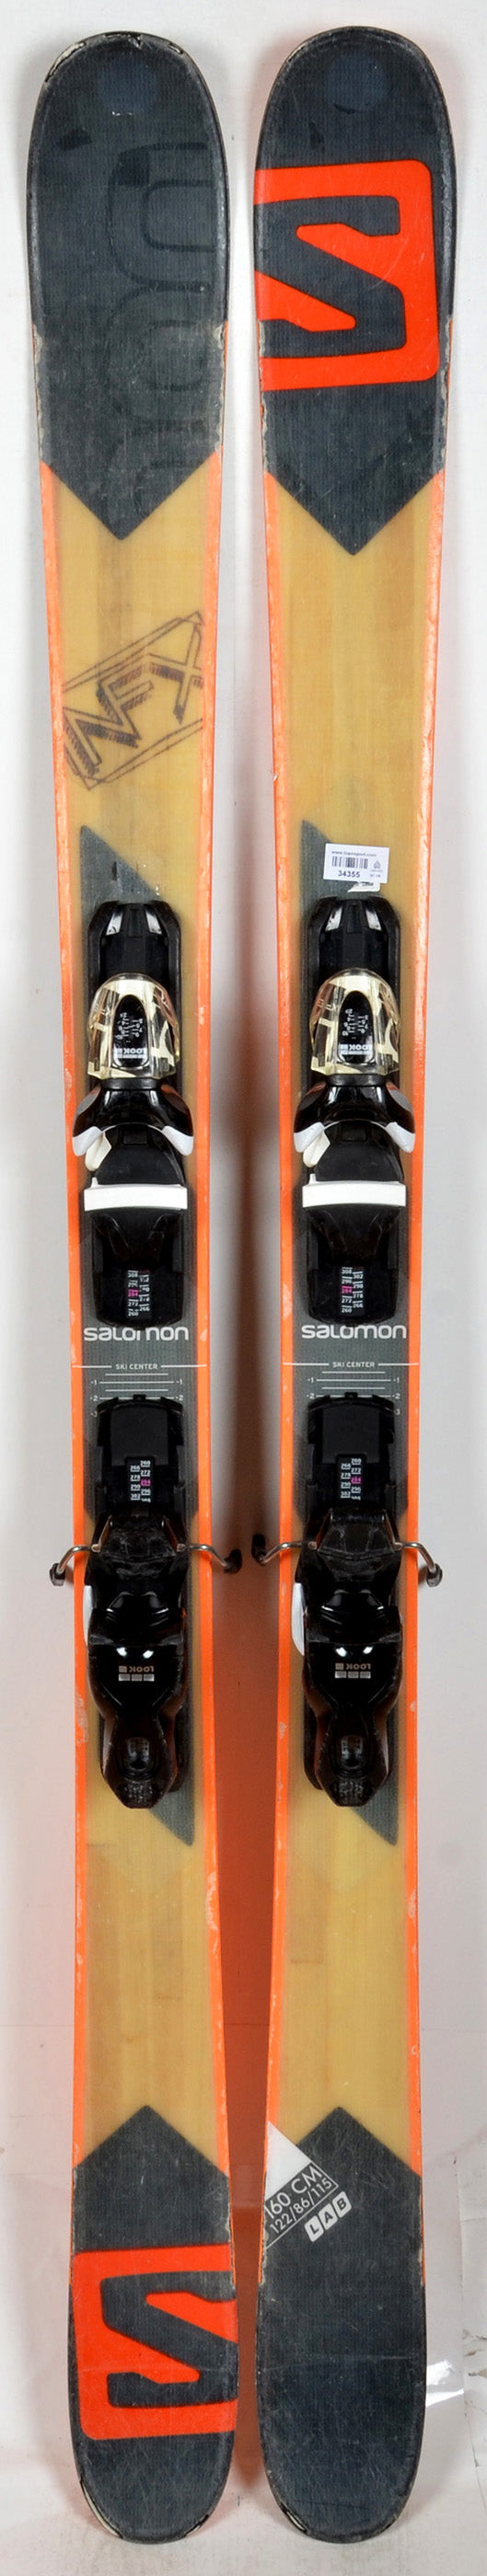 Salomon NFX - skis d'occasion